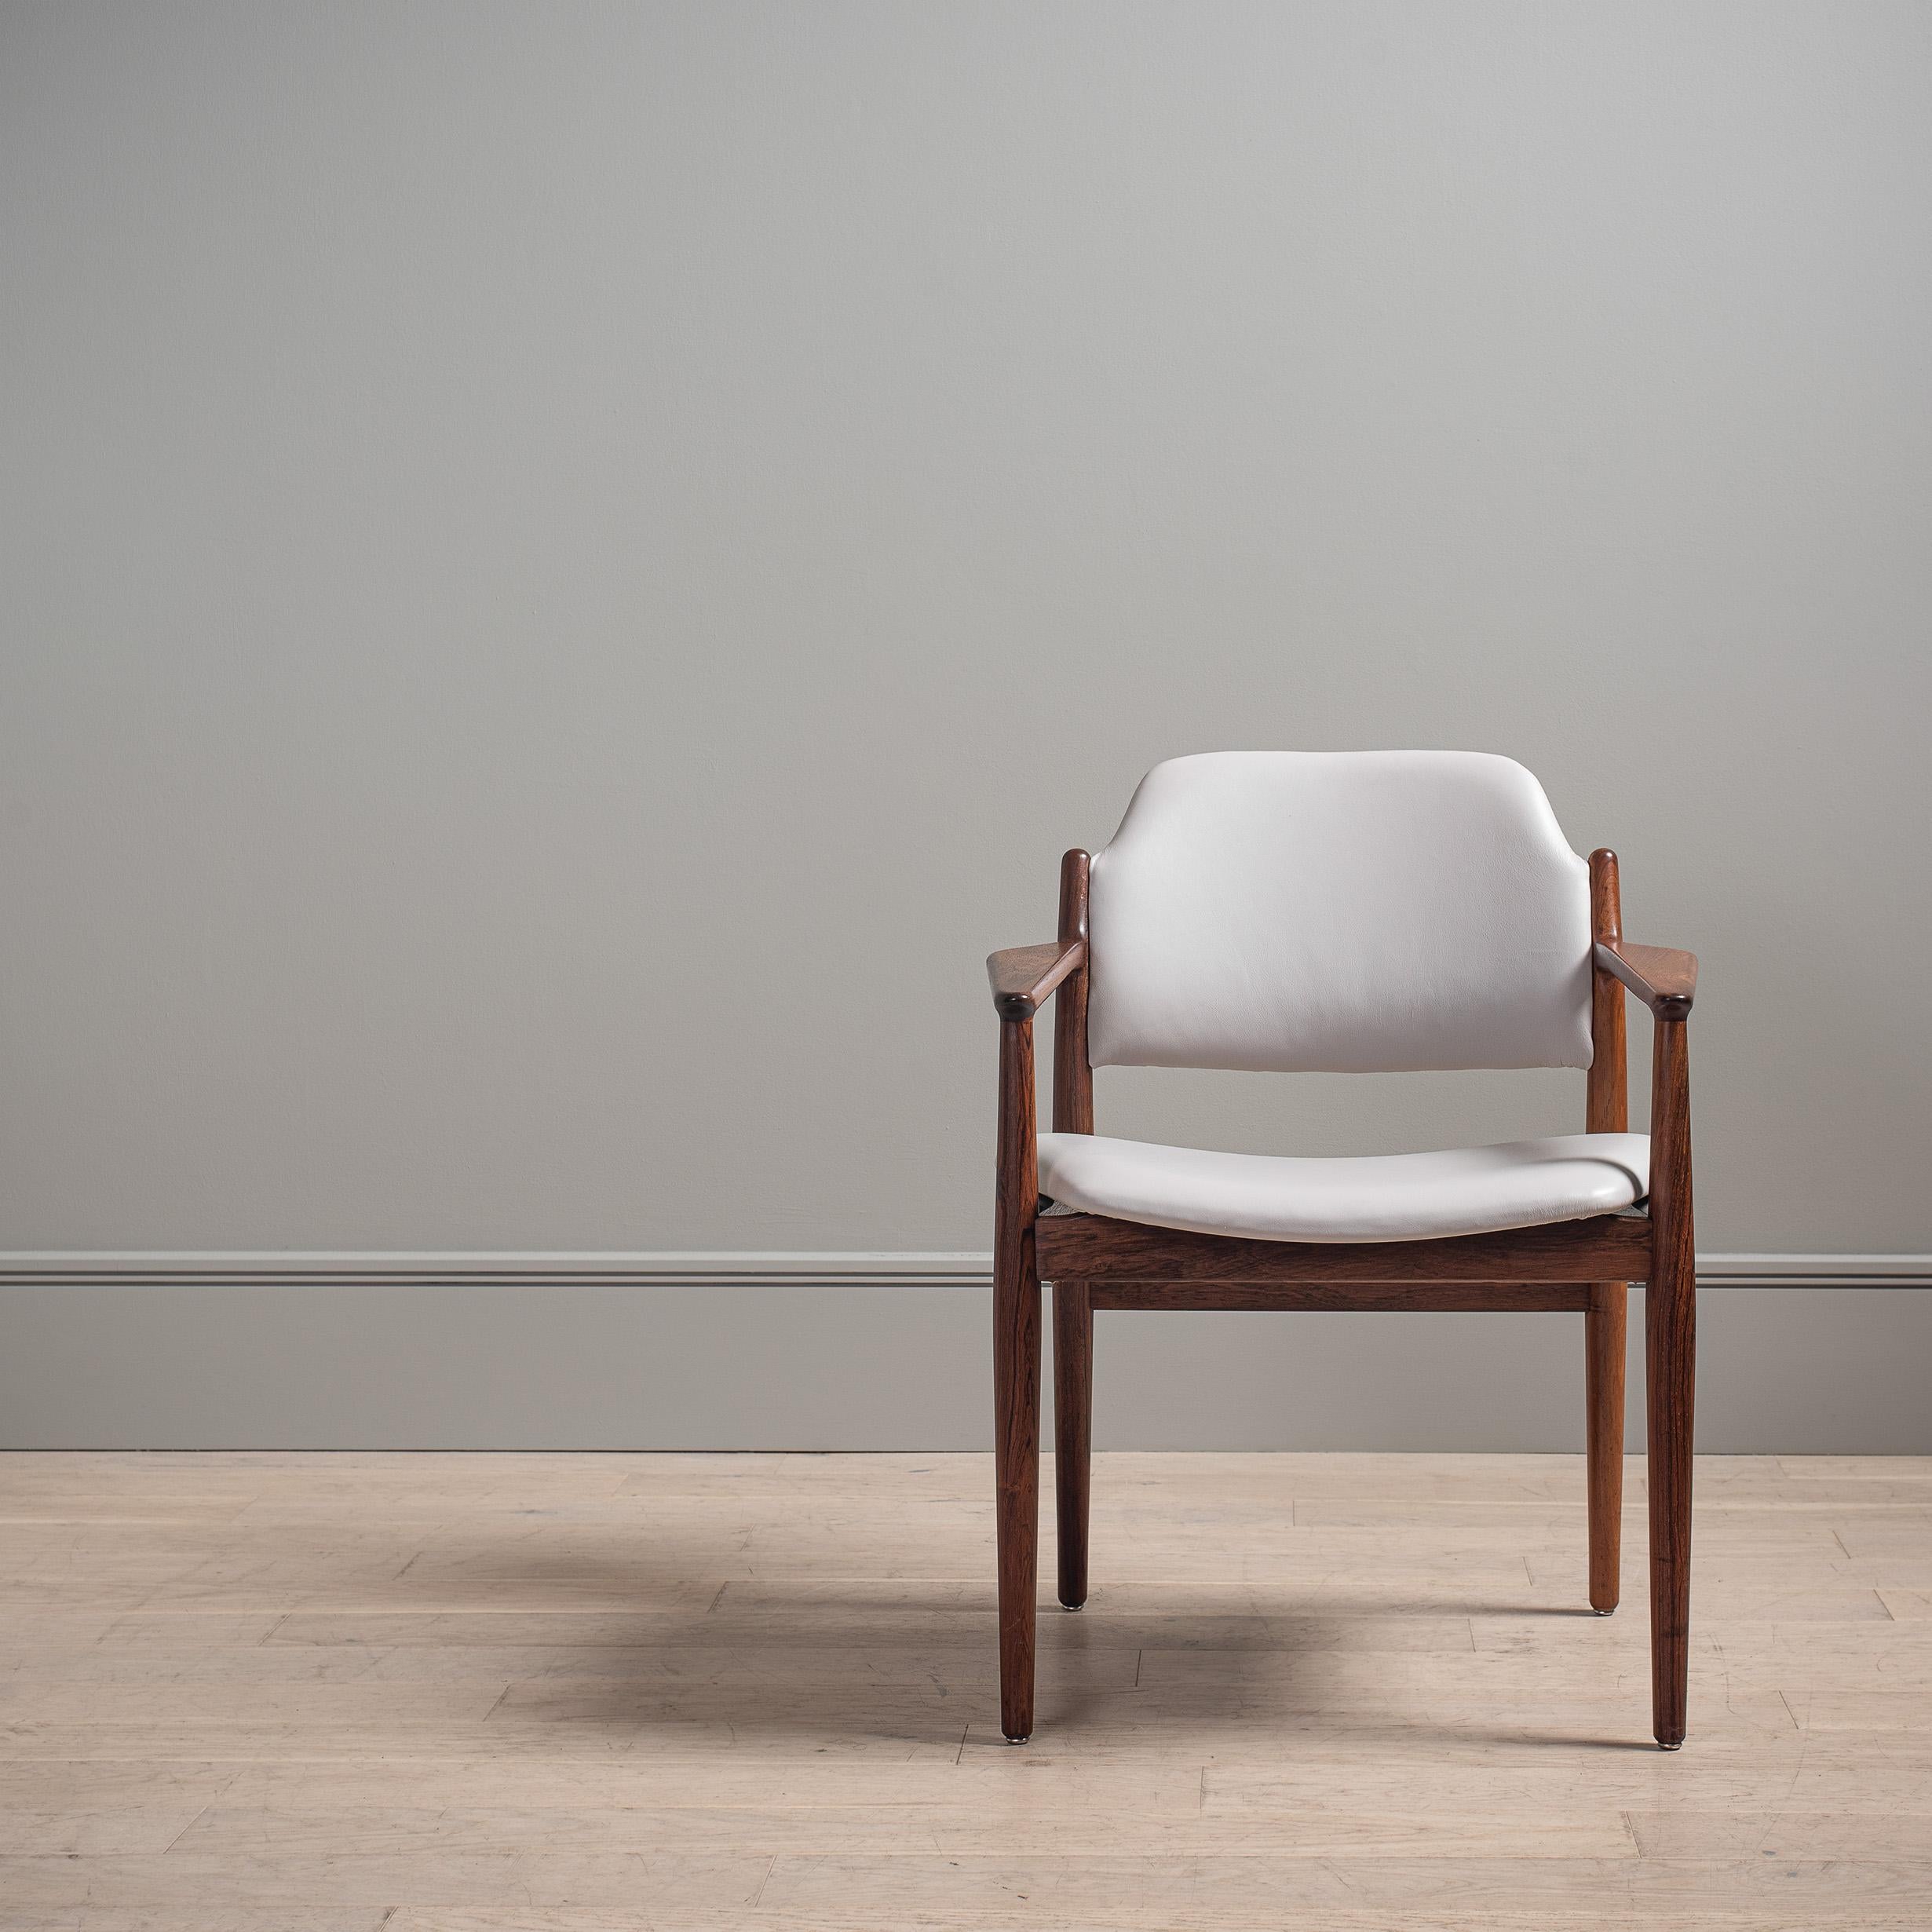 Magnifique fauteuil / chaise de bureau conçu par Arne Vodder et fabriqué par Sibast, vers 1960, Danemark. Entièrement retapissé en cuir italien blanc acier. Extrêmement confortable et d'une conception superbe. Très bon état.